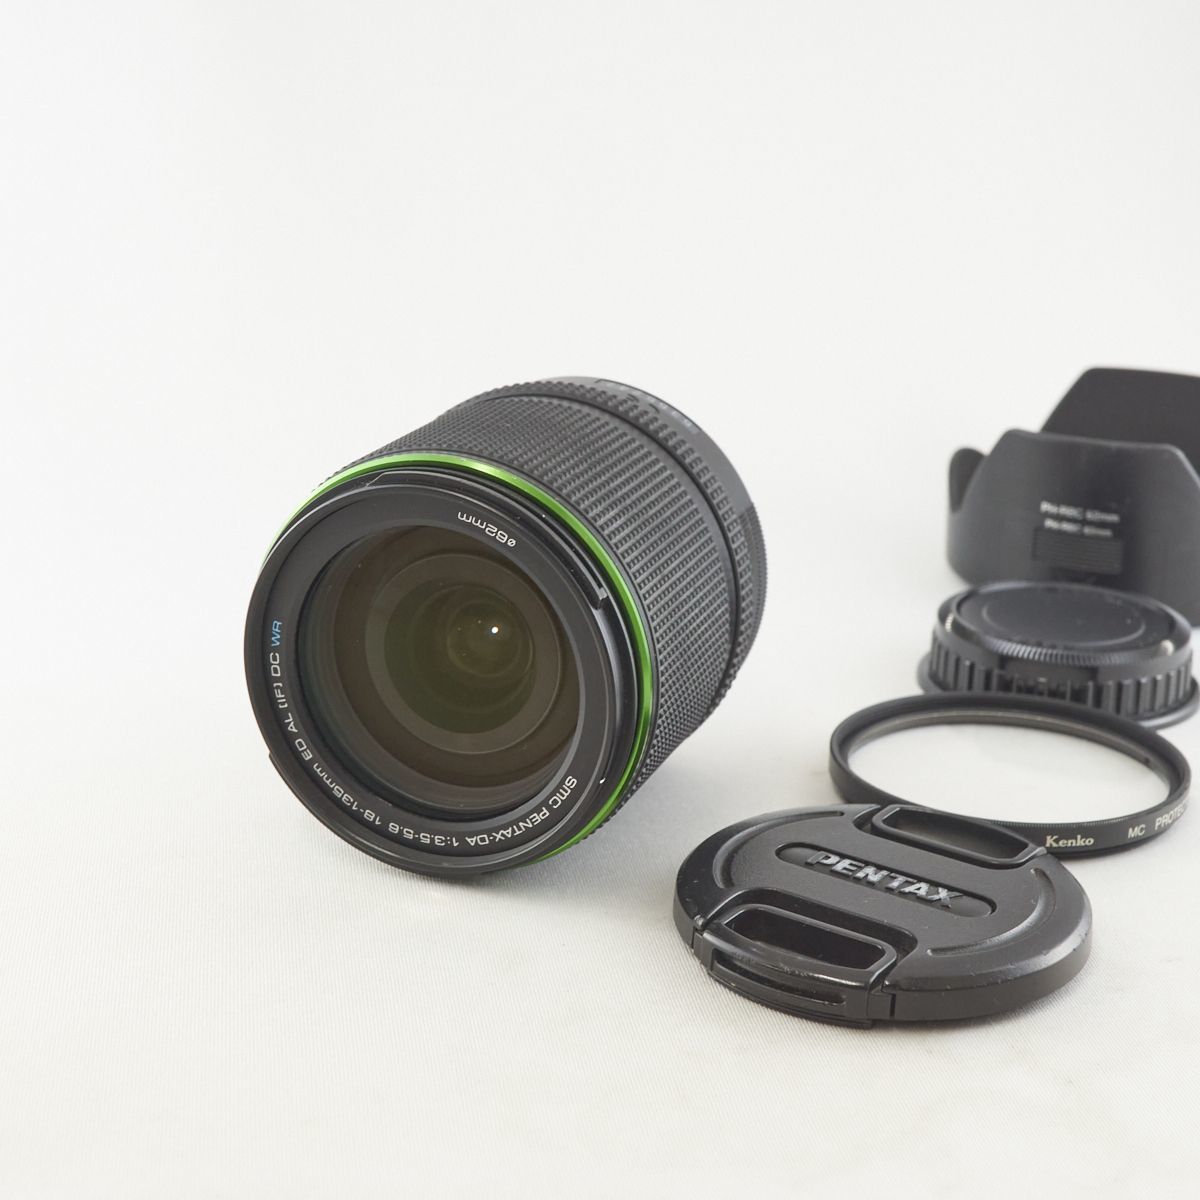 1点物になります。 PENTAX カメラレンズ 18-135mm F3.5-5.6ED 新品 レンズ(ズーム)